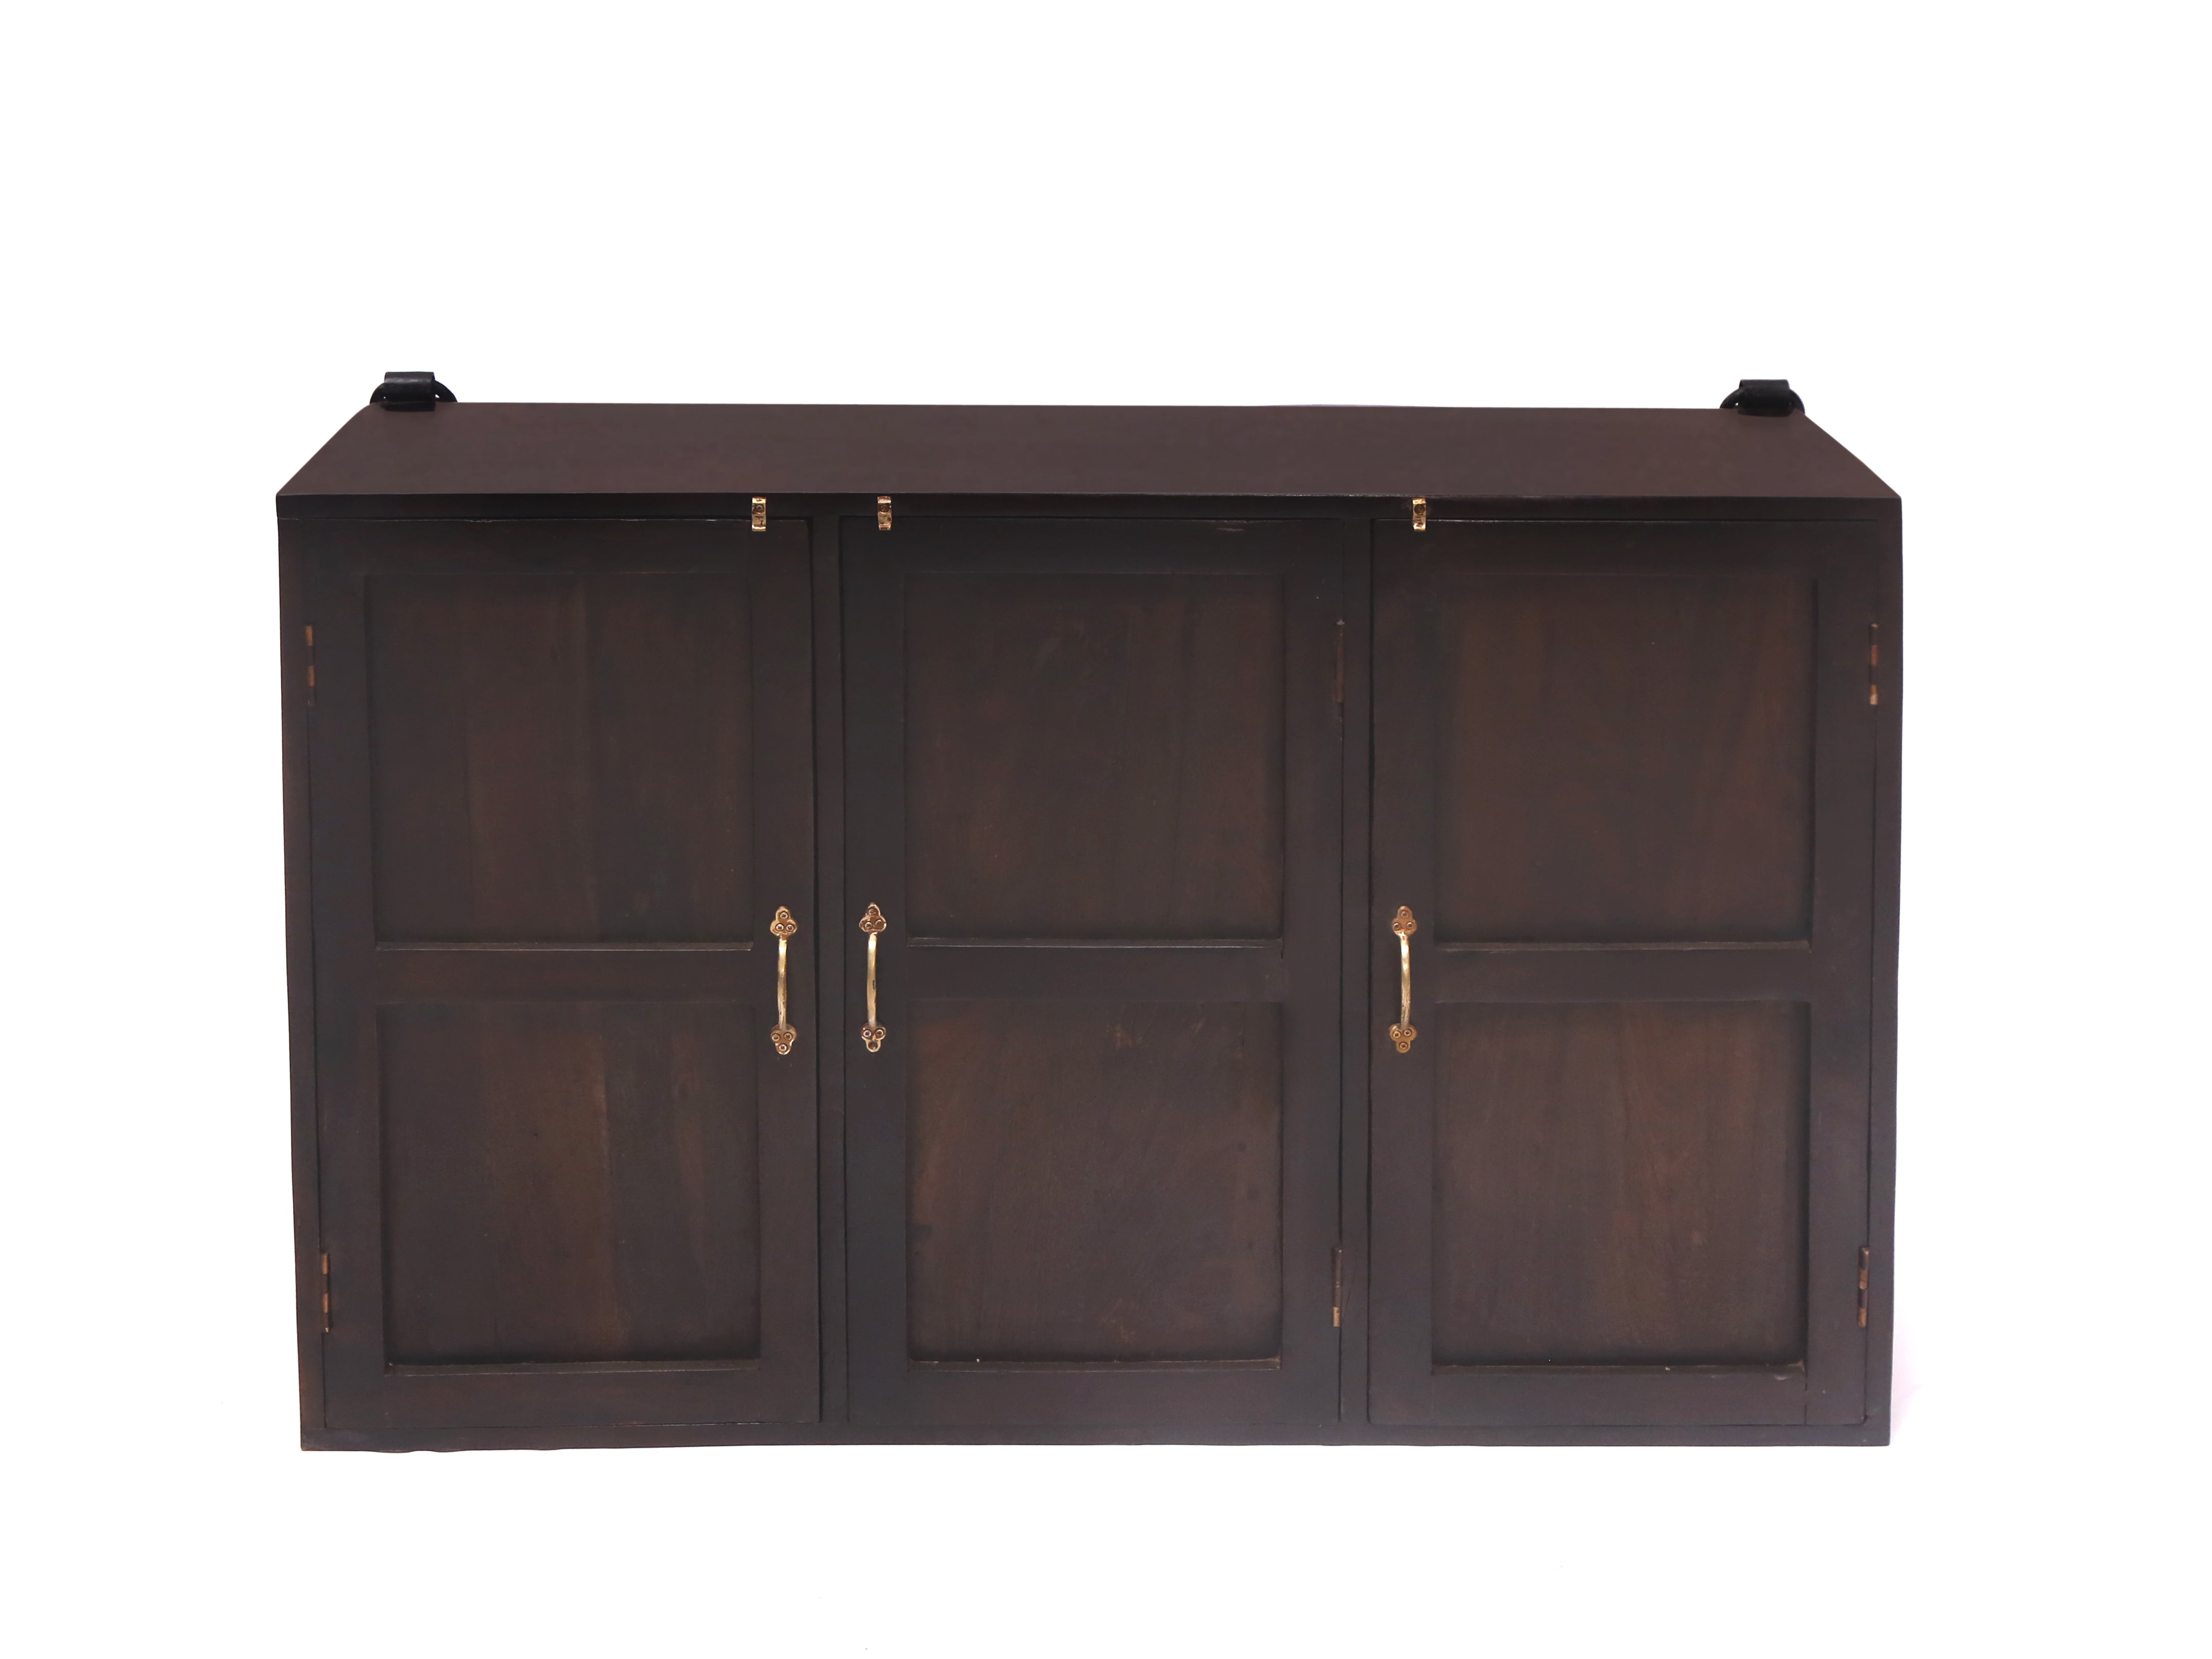 Wide 3 Door Wooden Cabinet Cupboard